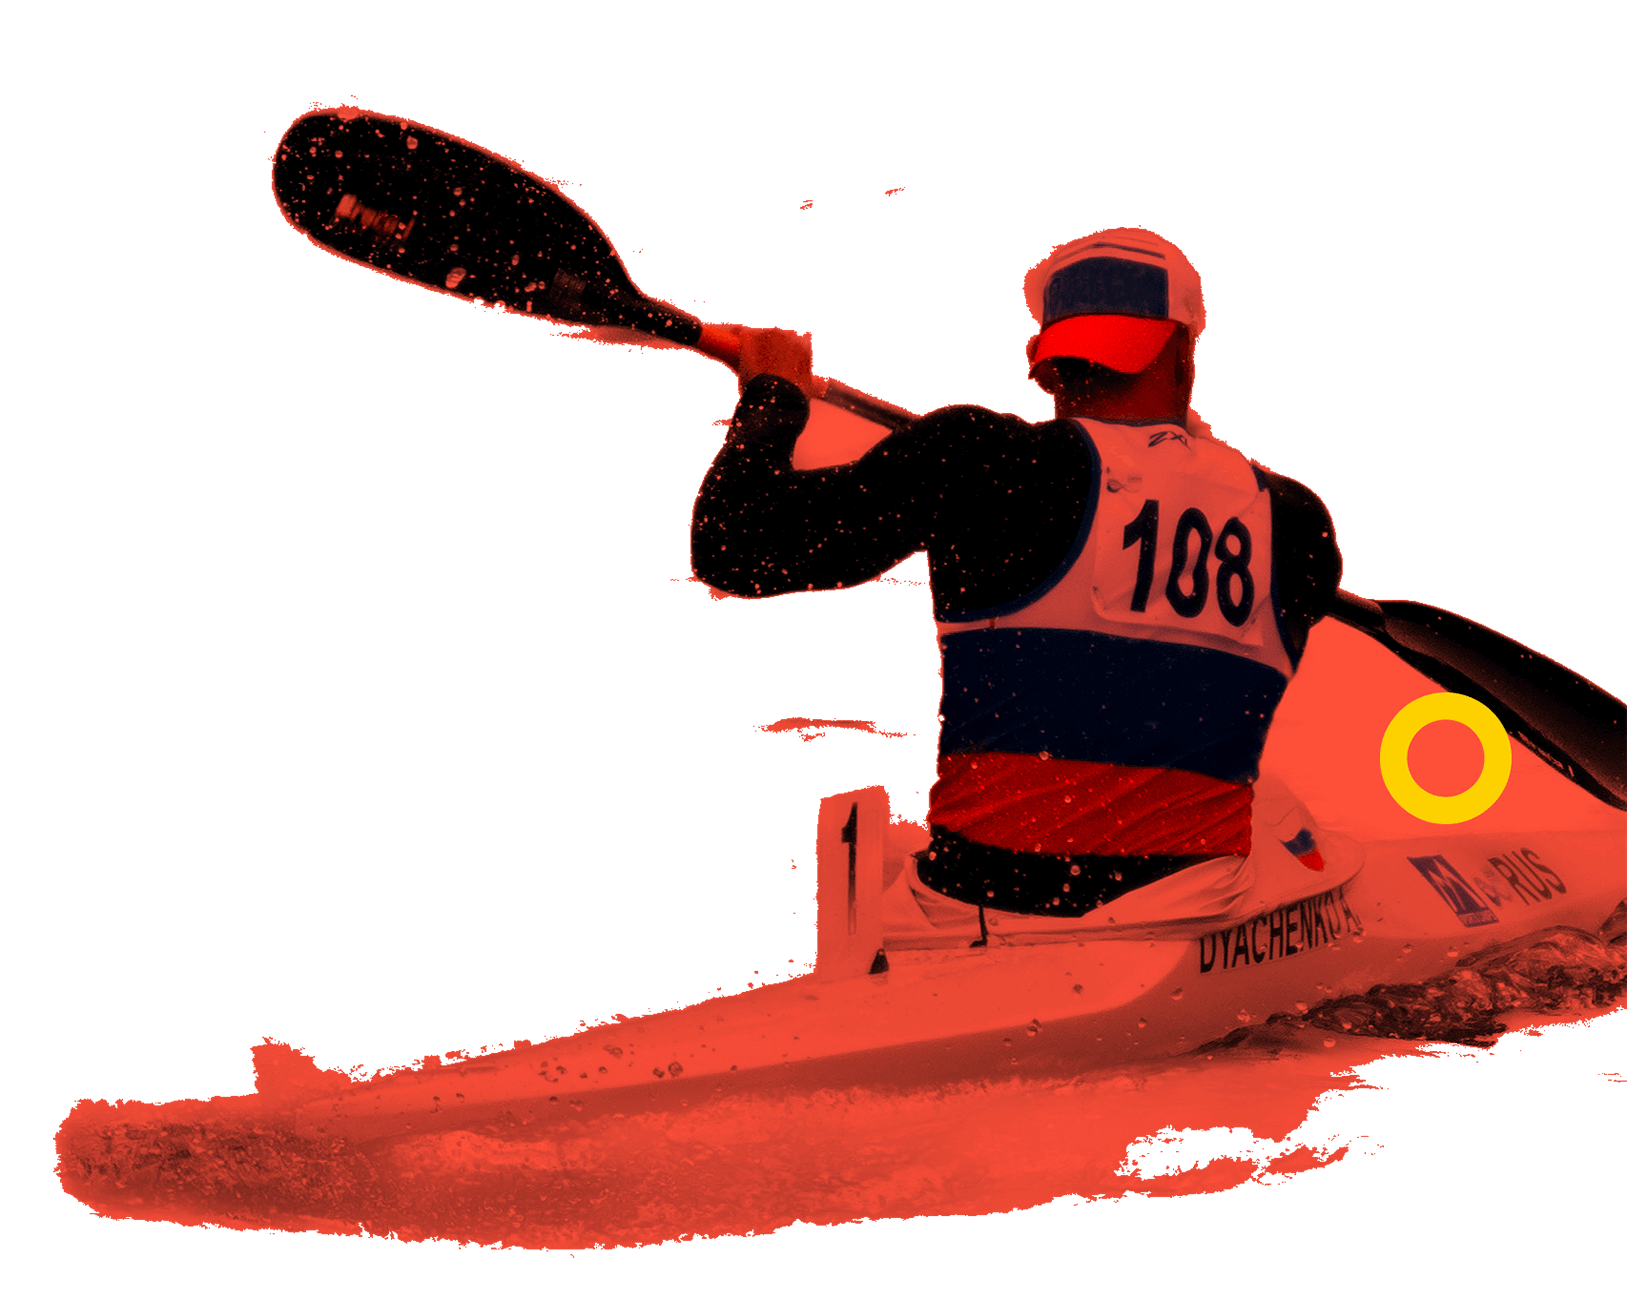 En la foto, se aprecia a un atleta sobre un kayak. Va de espaldas y tripula con una pala de dos hojas. 